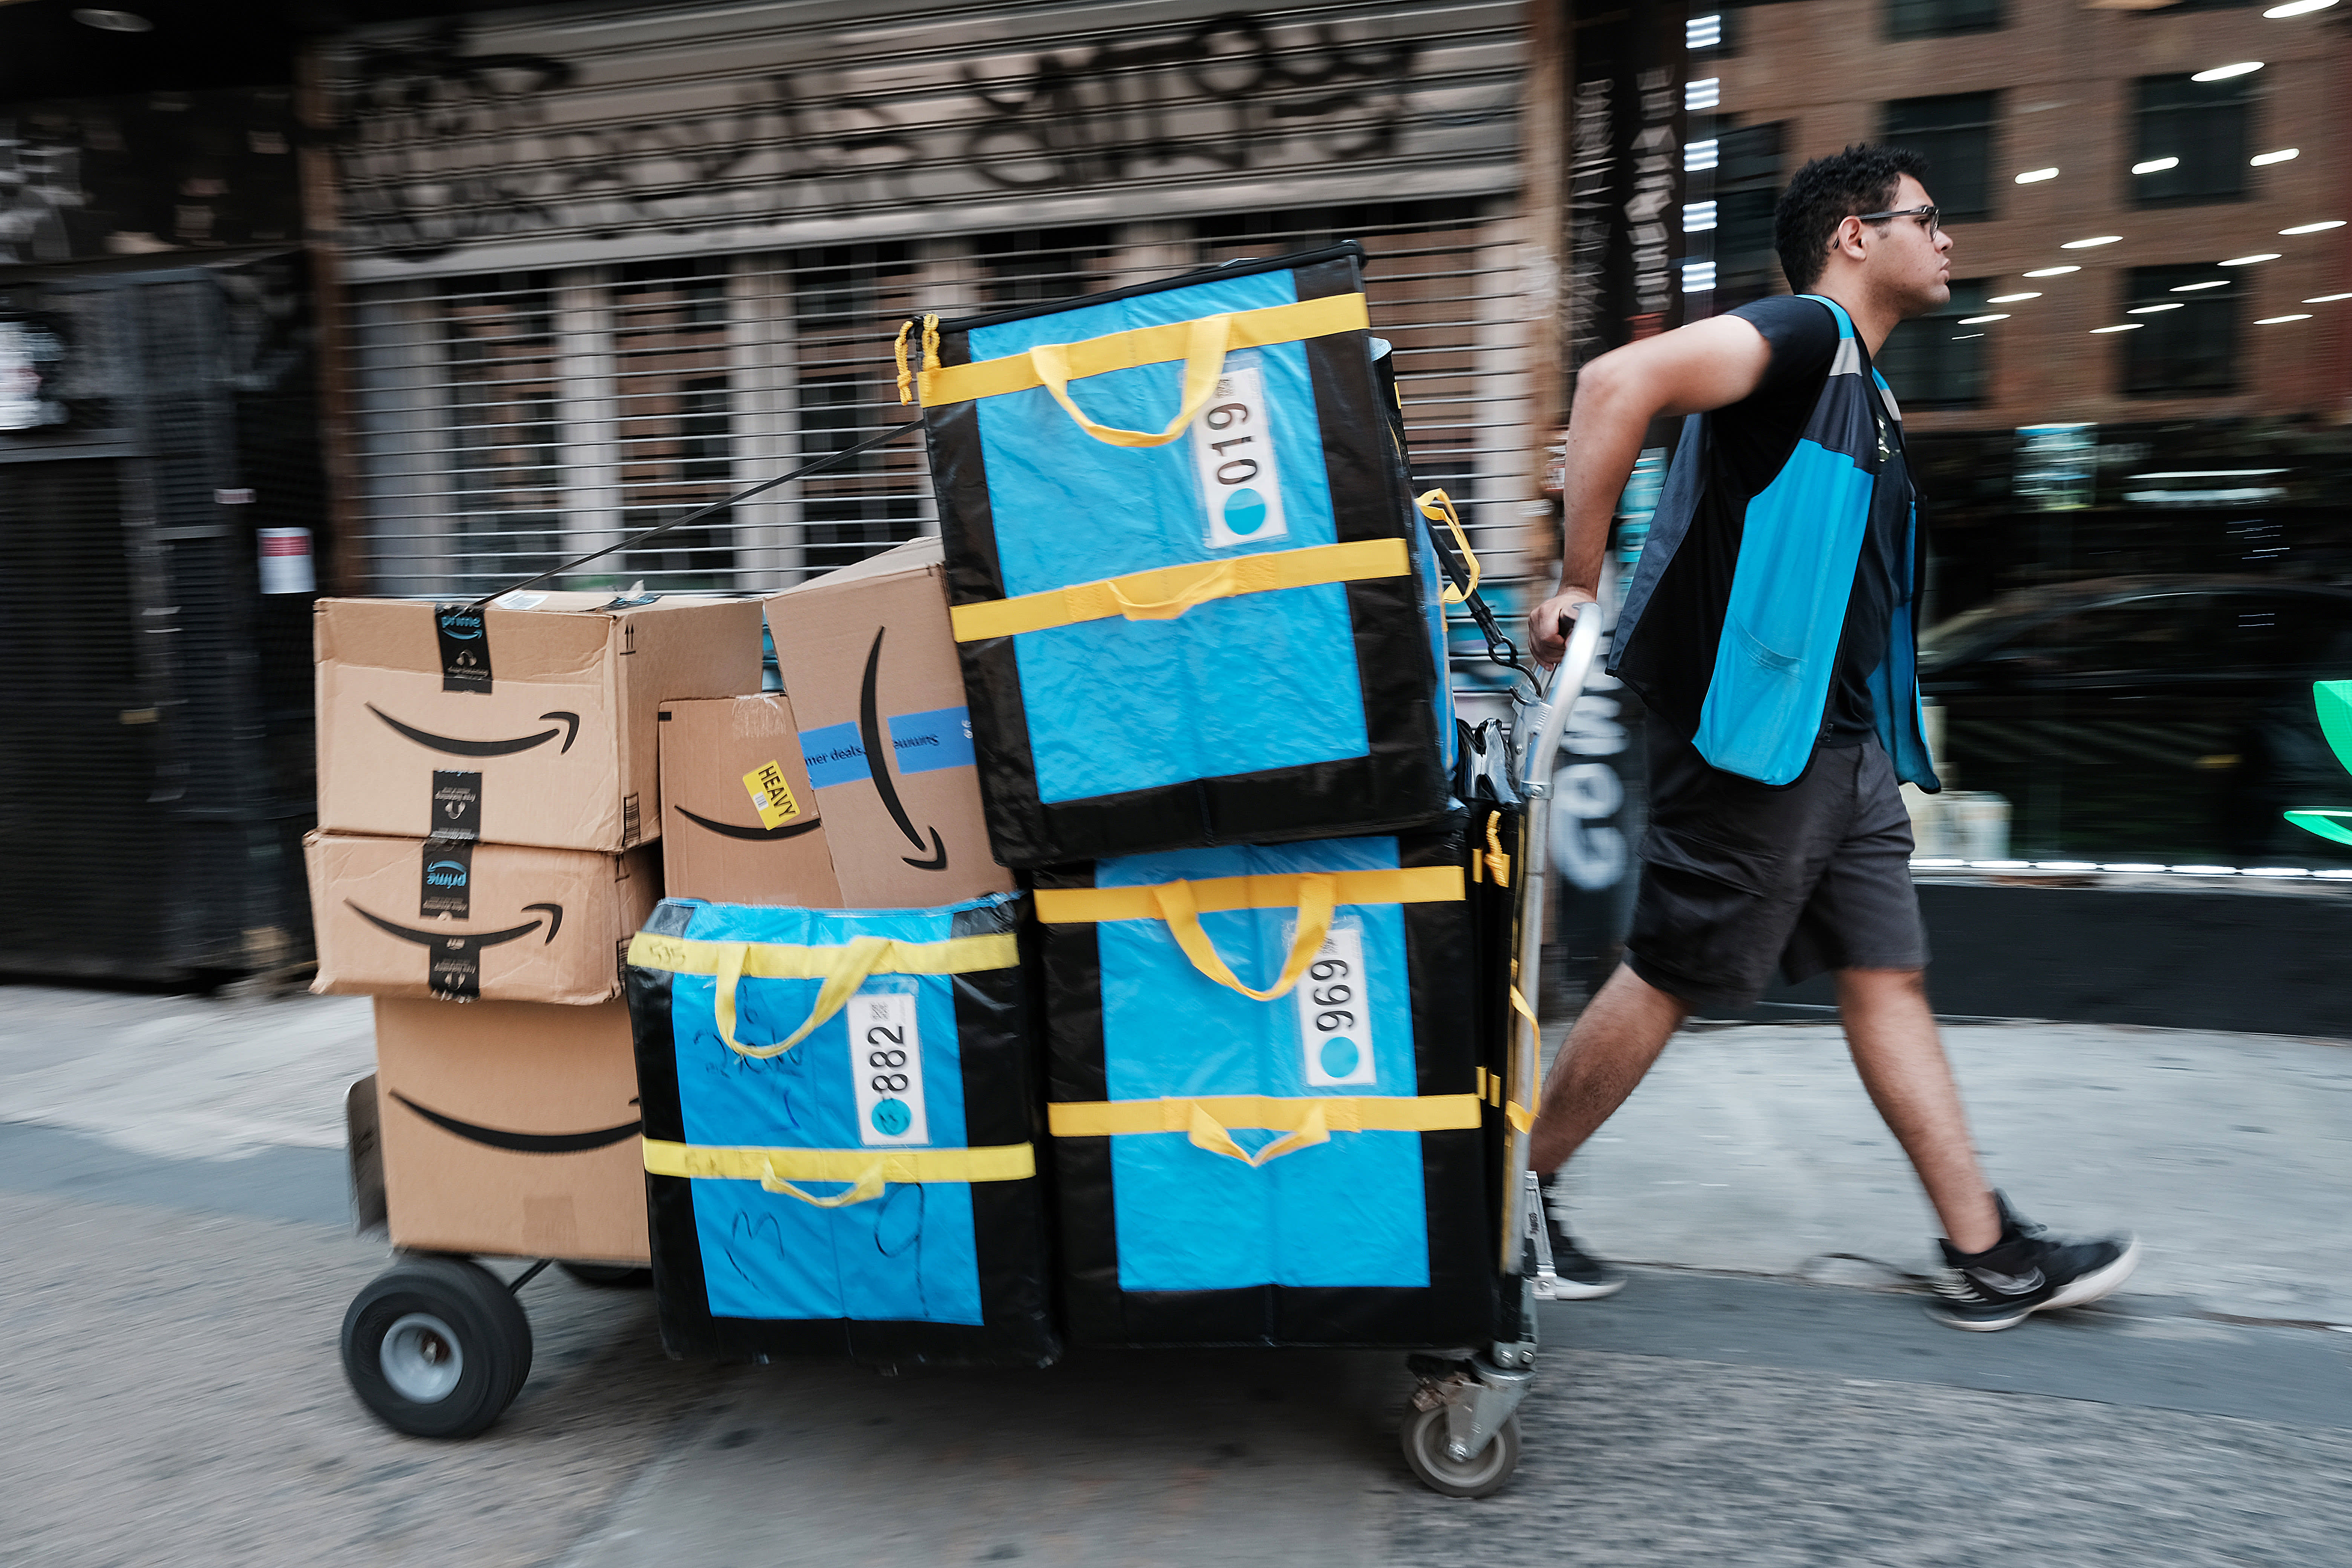 Die FTC erhebt Anklage gegen drei Amazon-Führungskräfte in einer geänderten Beschwerde gegen Prime